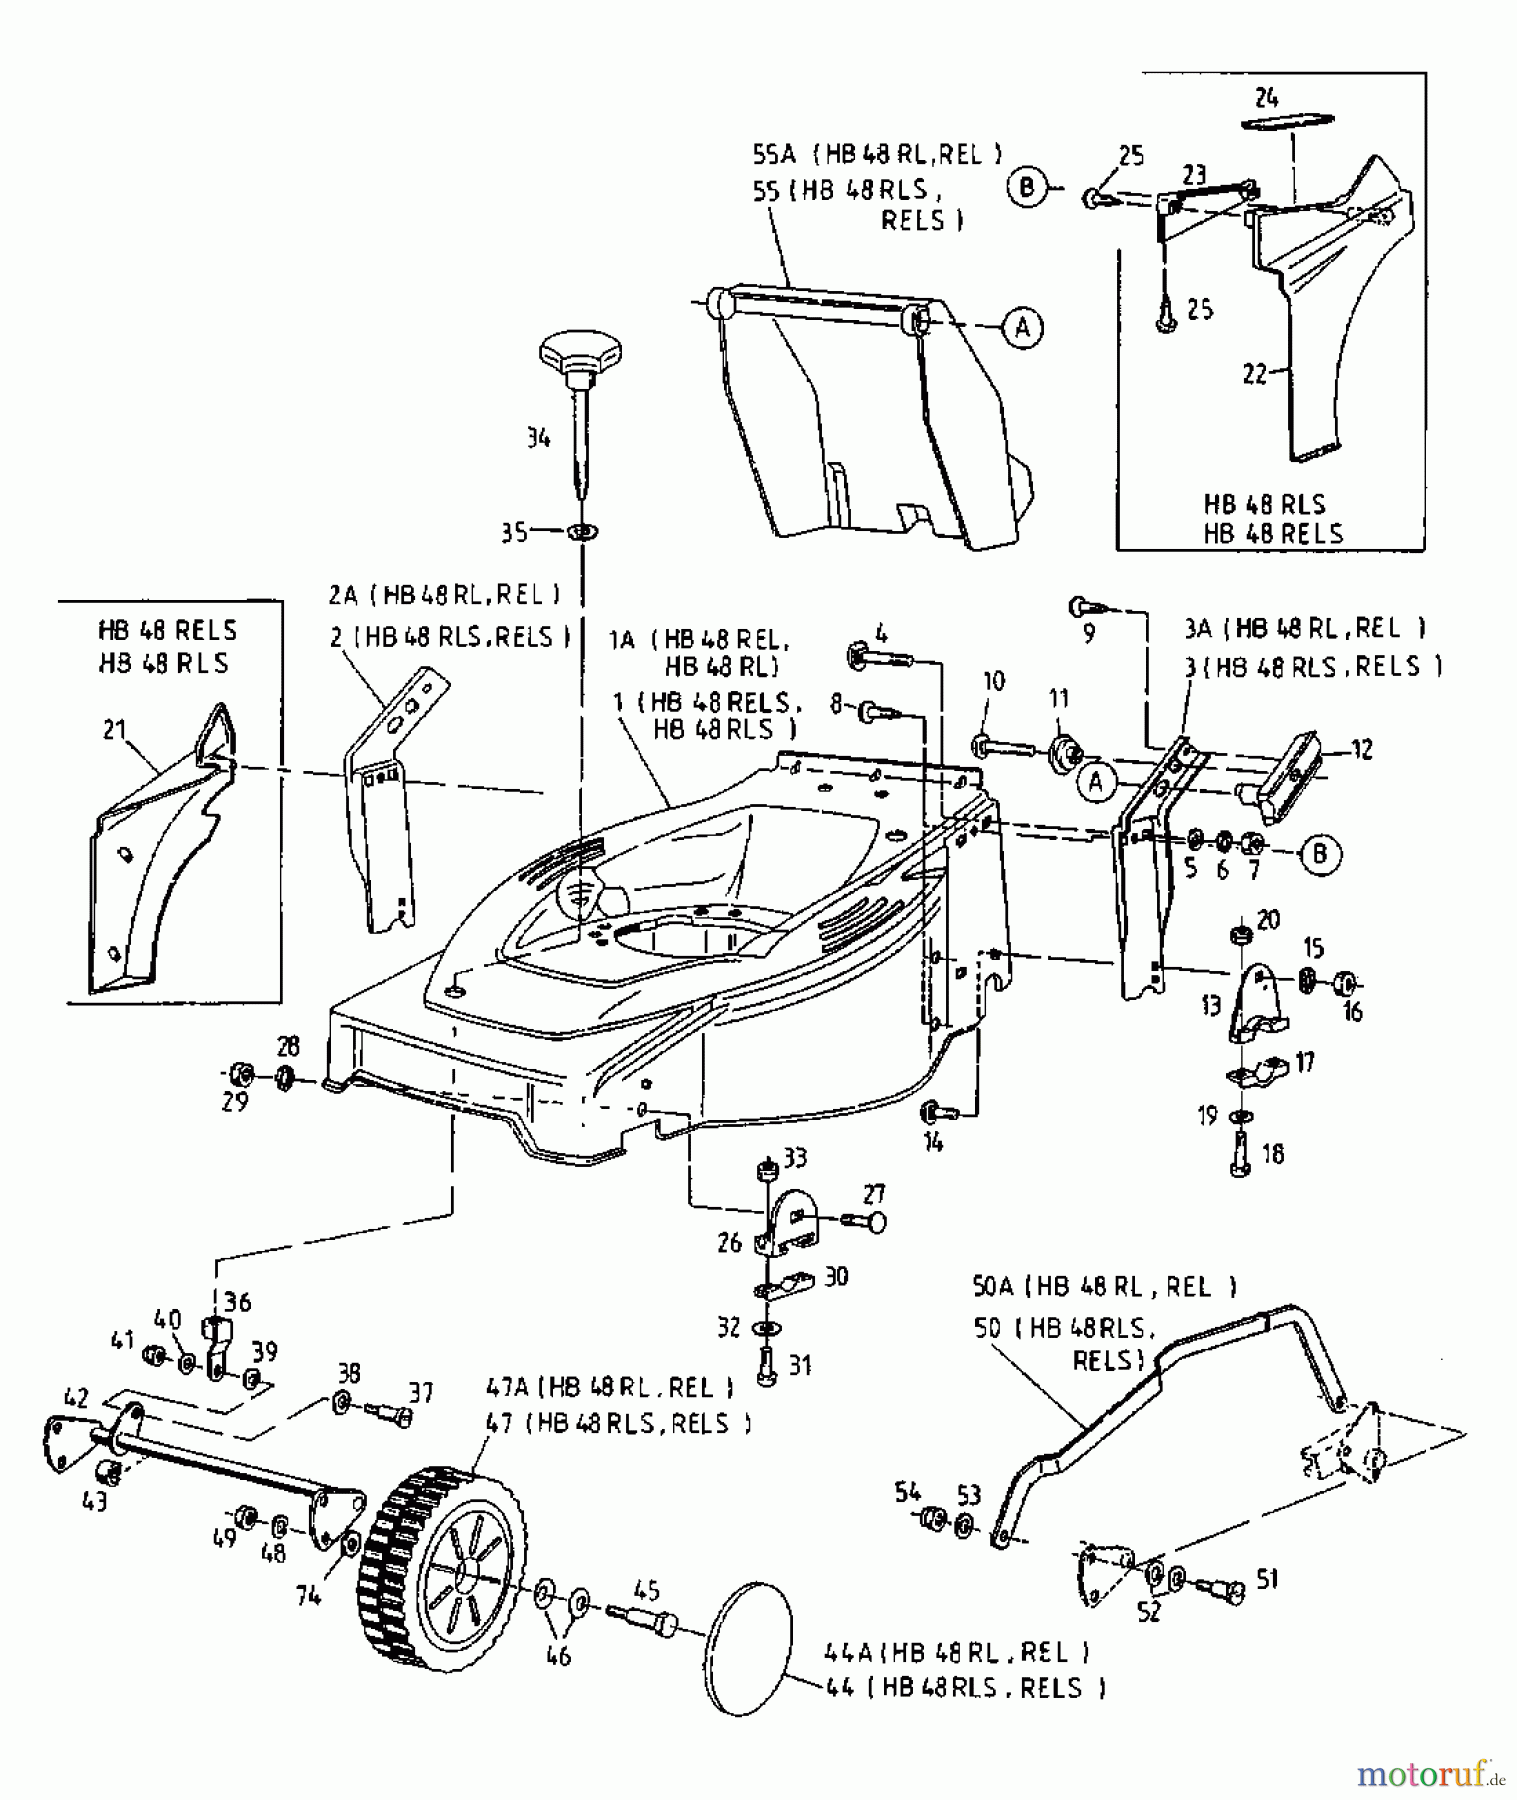  Gutbrod Petrol mower self propelled HB 48 RELS 12CET58Y690  (2000) Basic machine